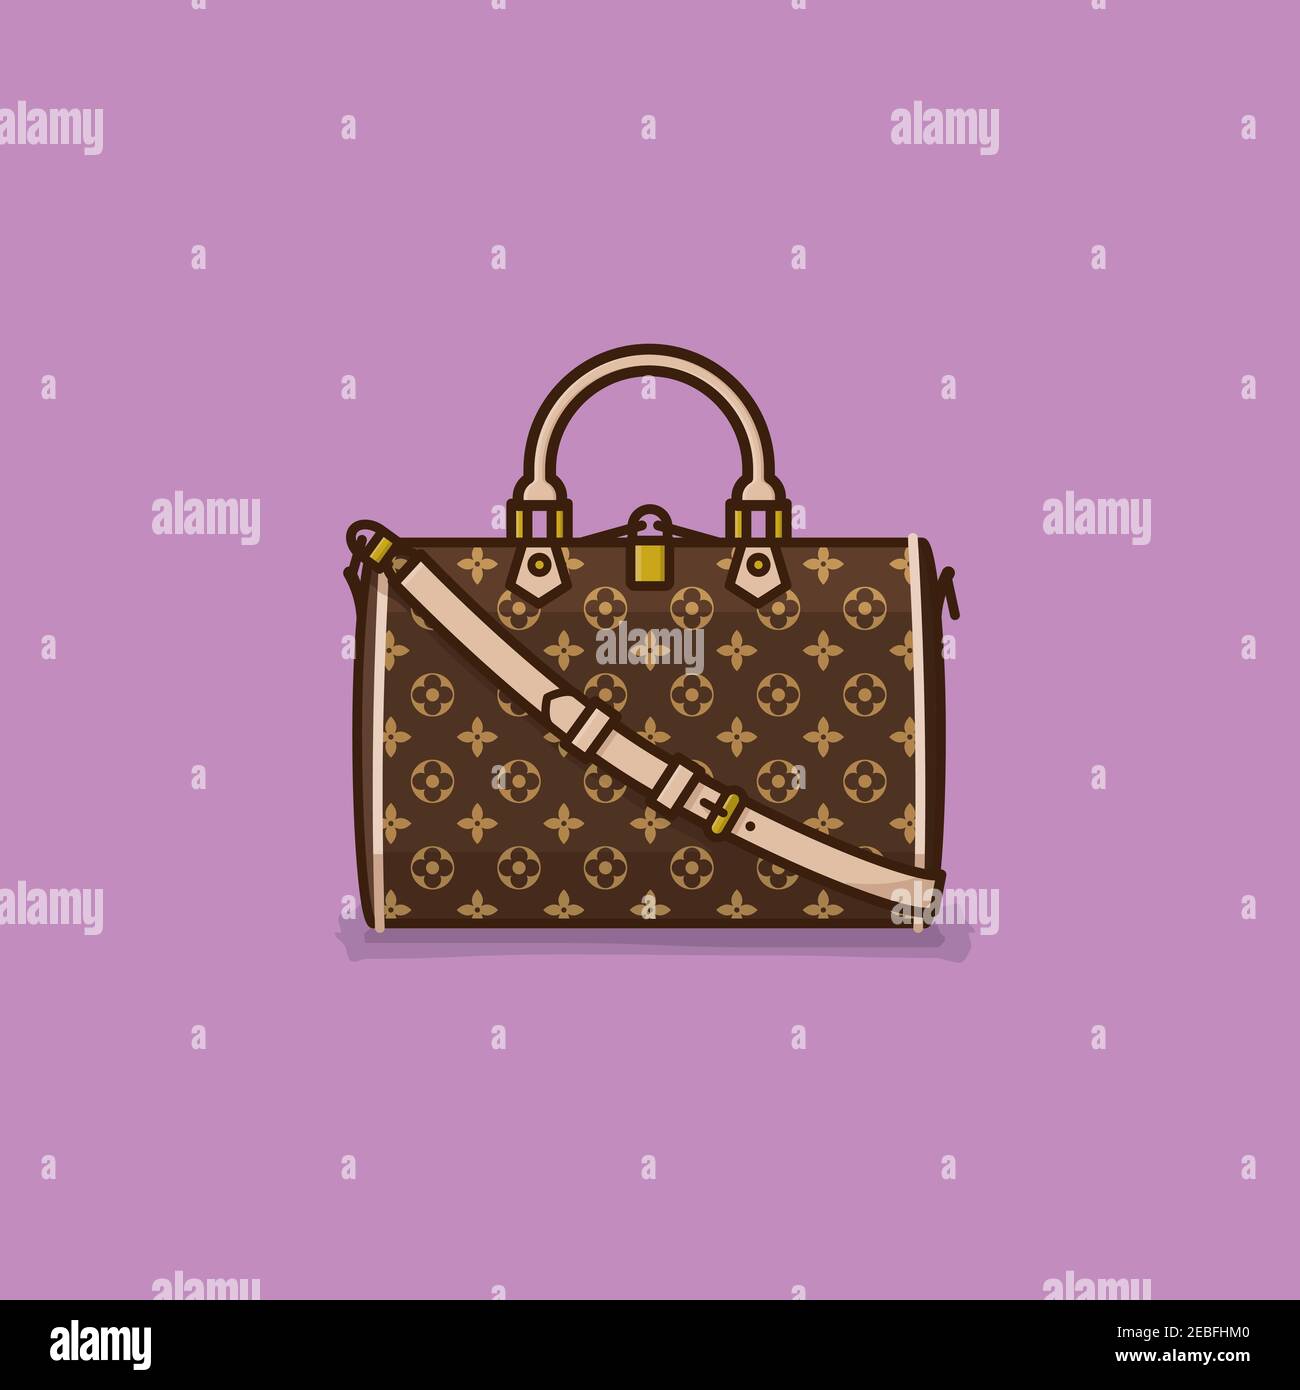 Ikonische Mode Designer Handtasche Vektor Illustration für Handtasche Tag auf Oktober 10 Stock Vektor